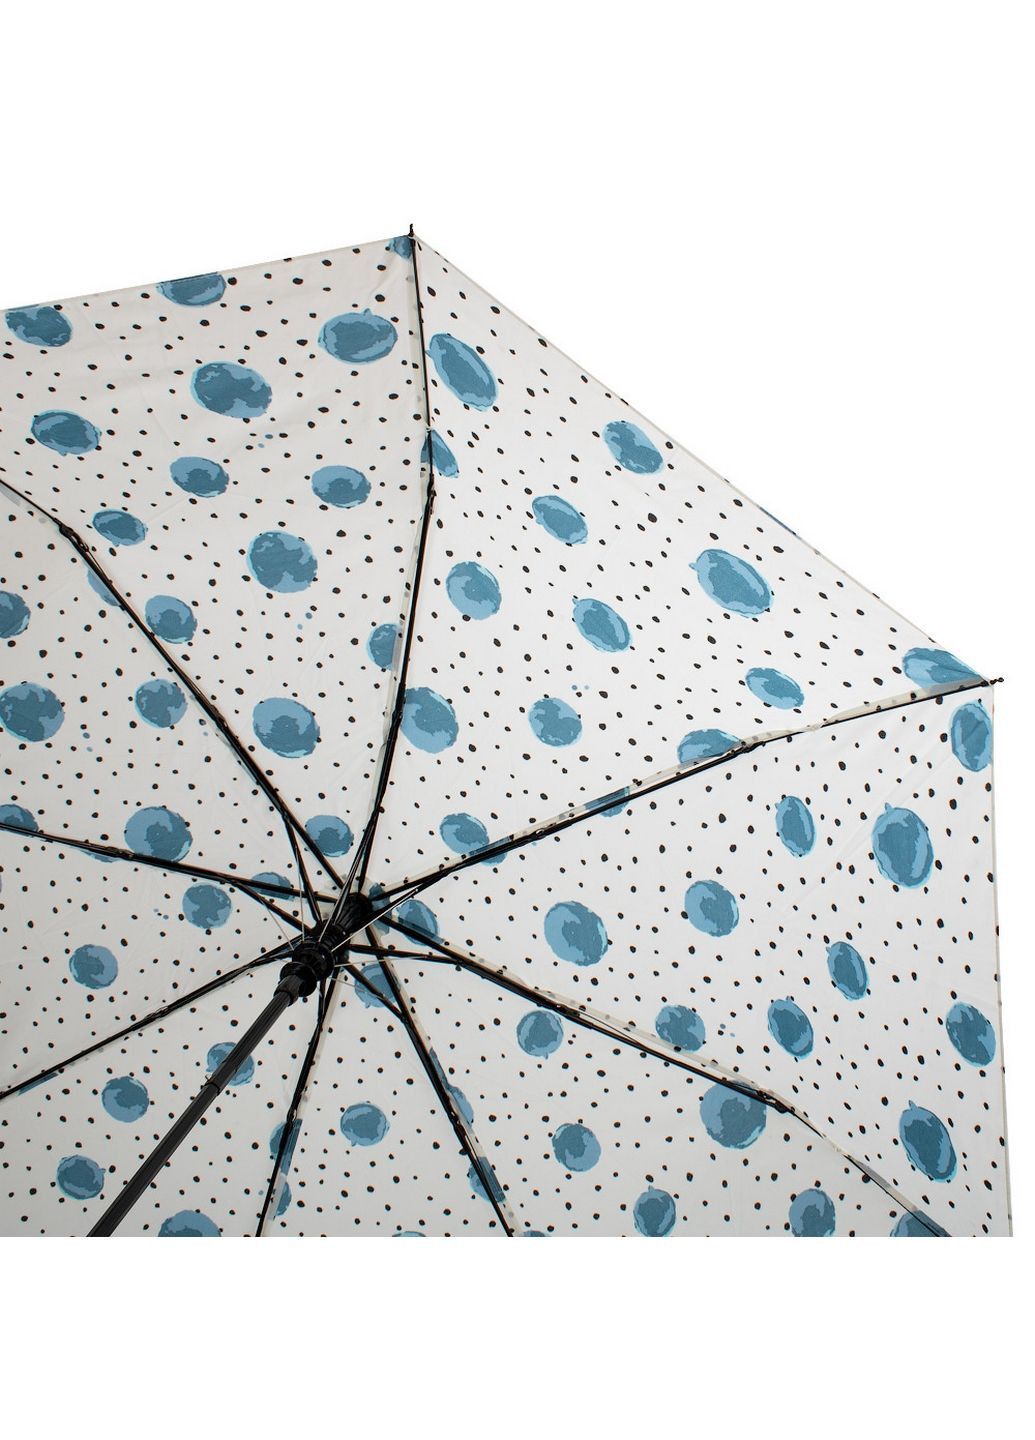 Женский складной зонт полуавтомат Happy Rain (282590760)